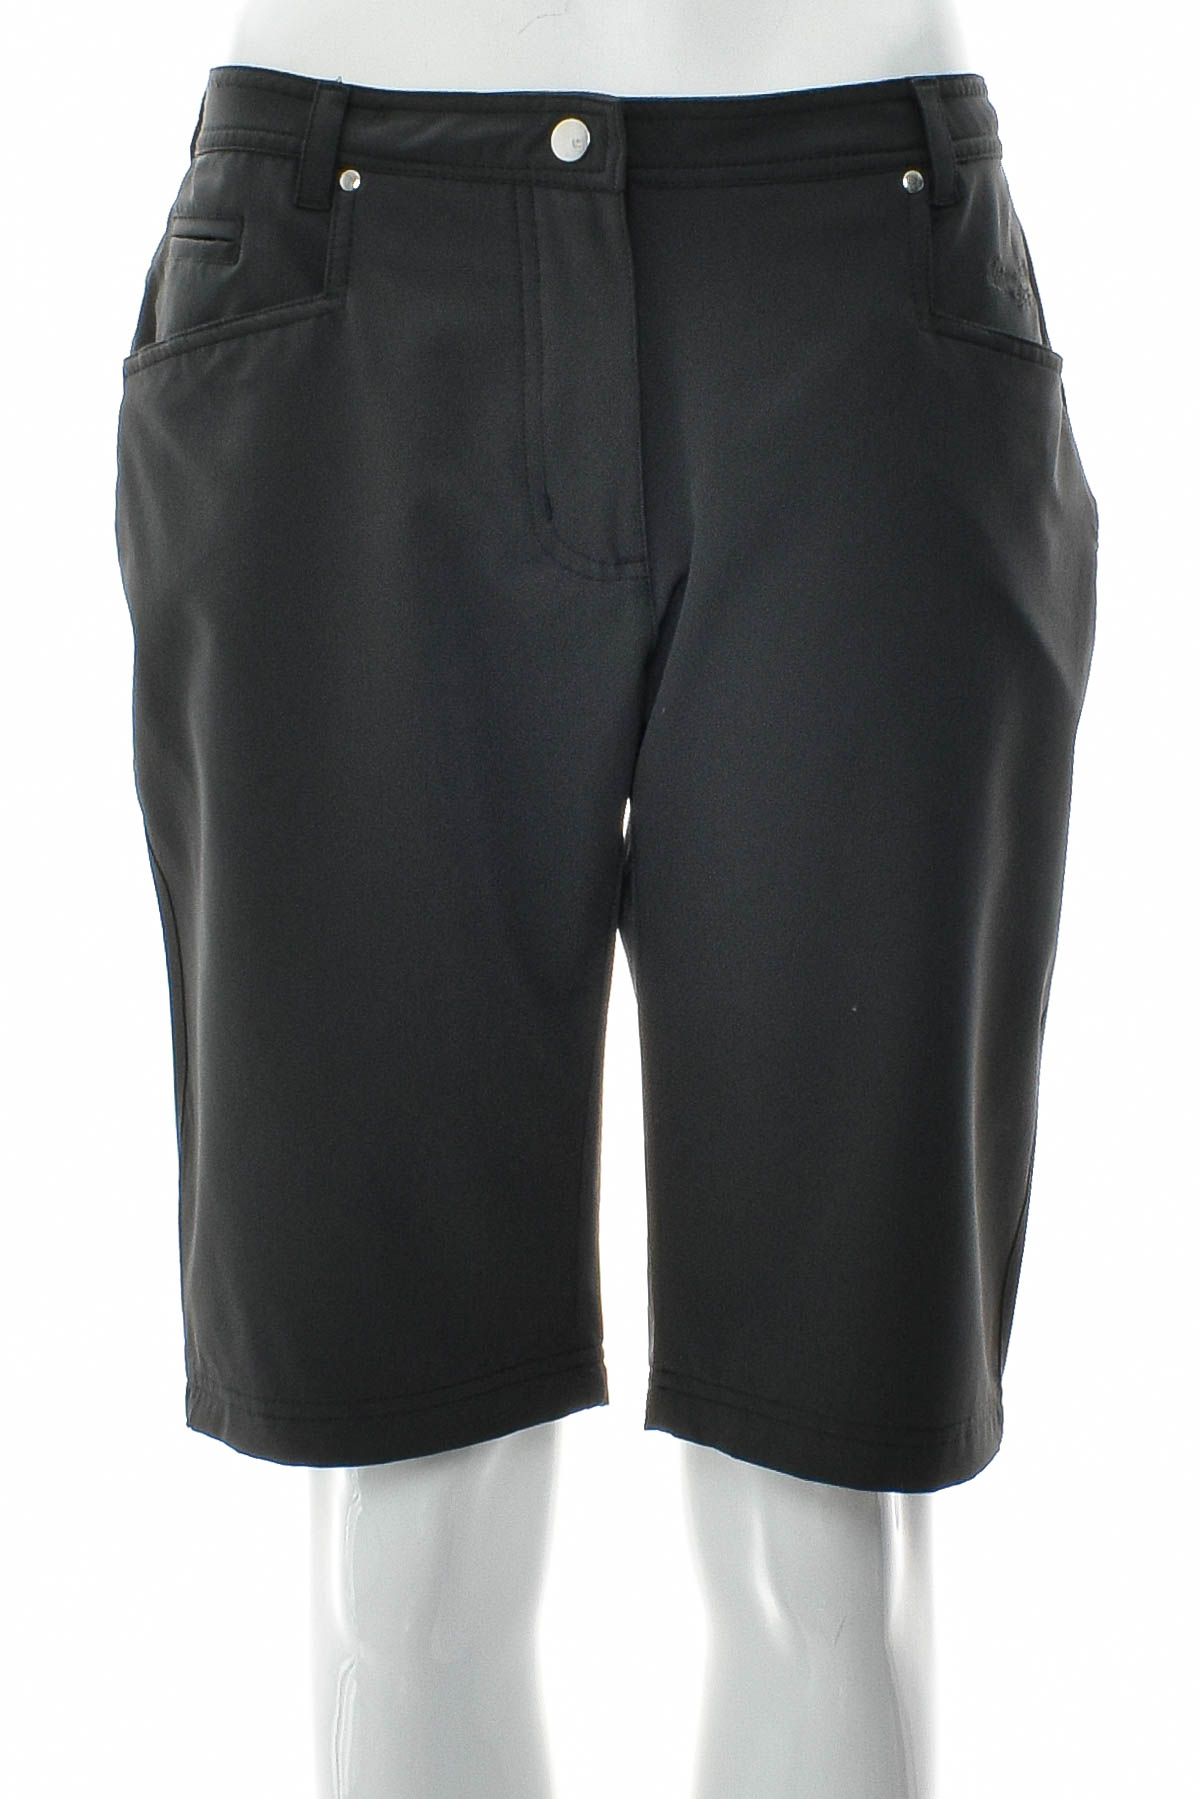 Female shorts - Linea Primero - 0